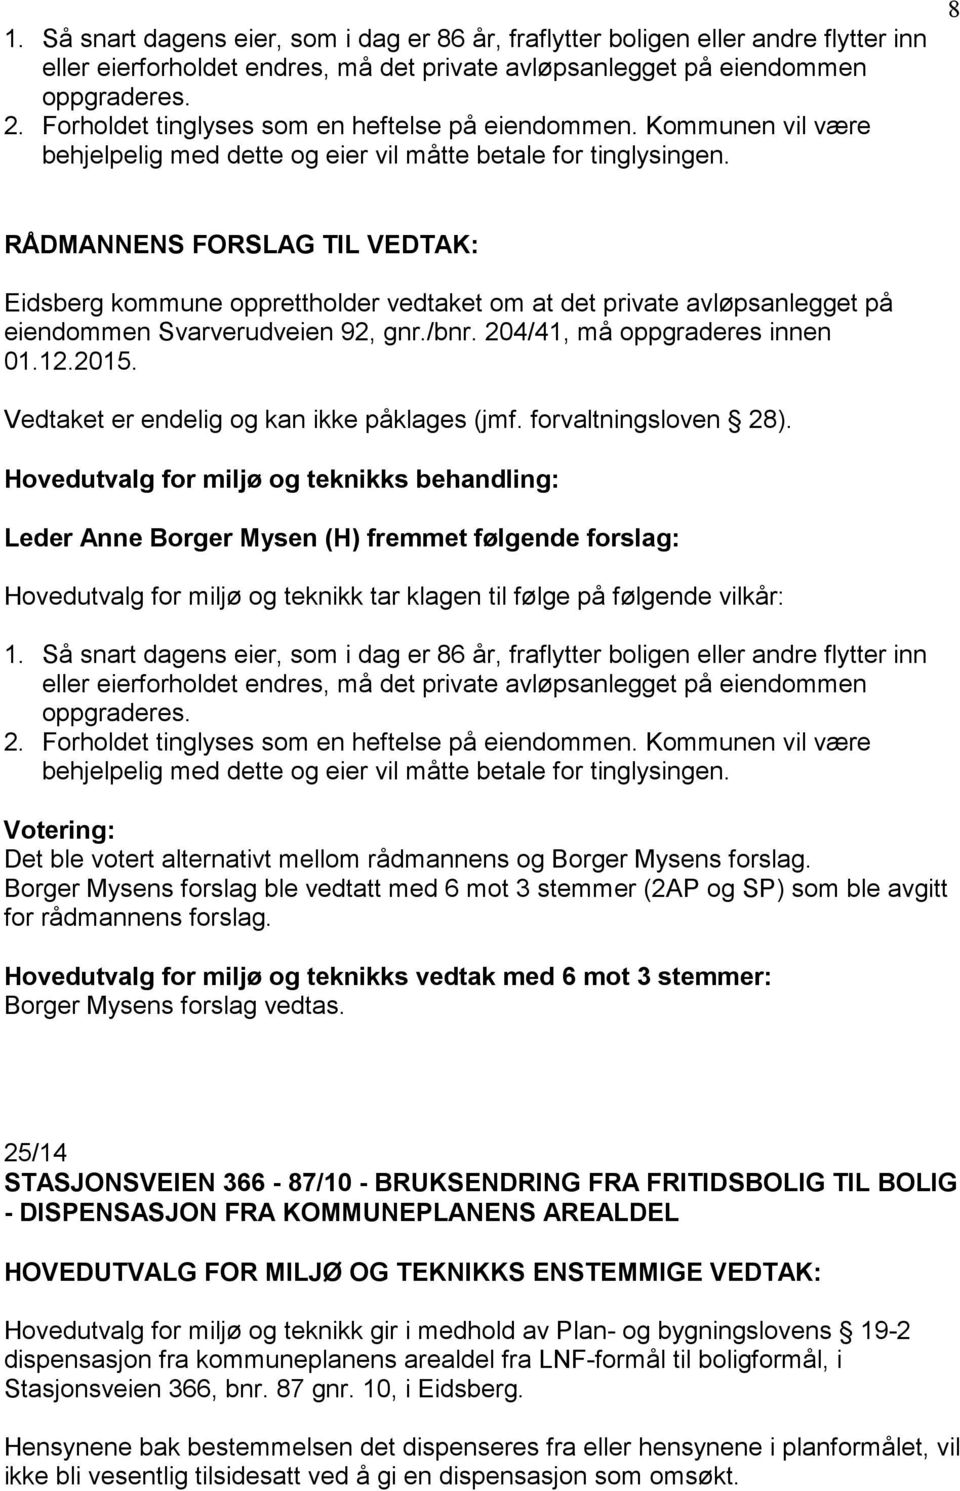 8 Eidsberg kommune opprettholder vedtaket om at det private avløpsanlegget på eiendommen Svarverudveien 92, gnr./bnr. 204/41, må oppgraderes innen 01.12.2015.